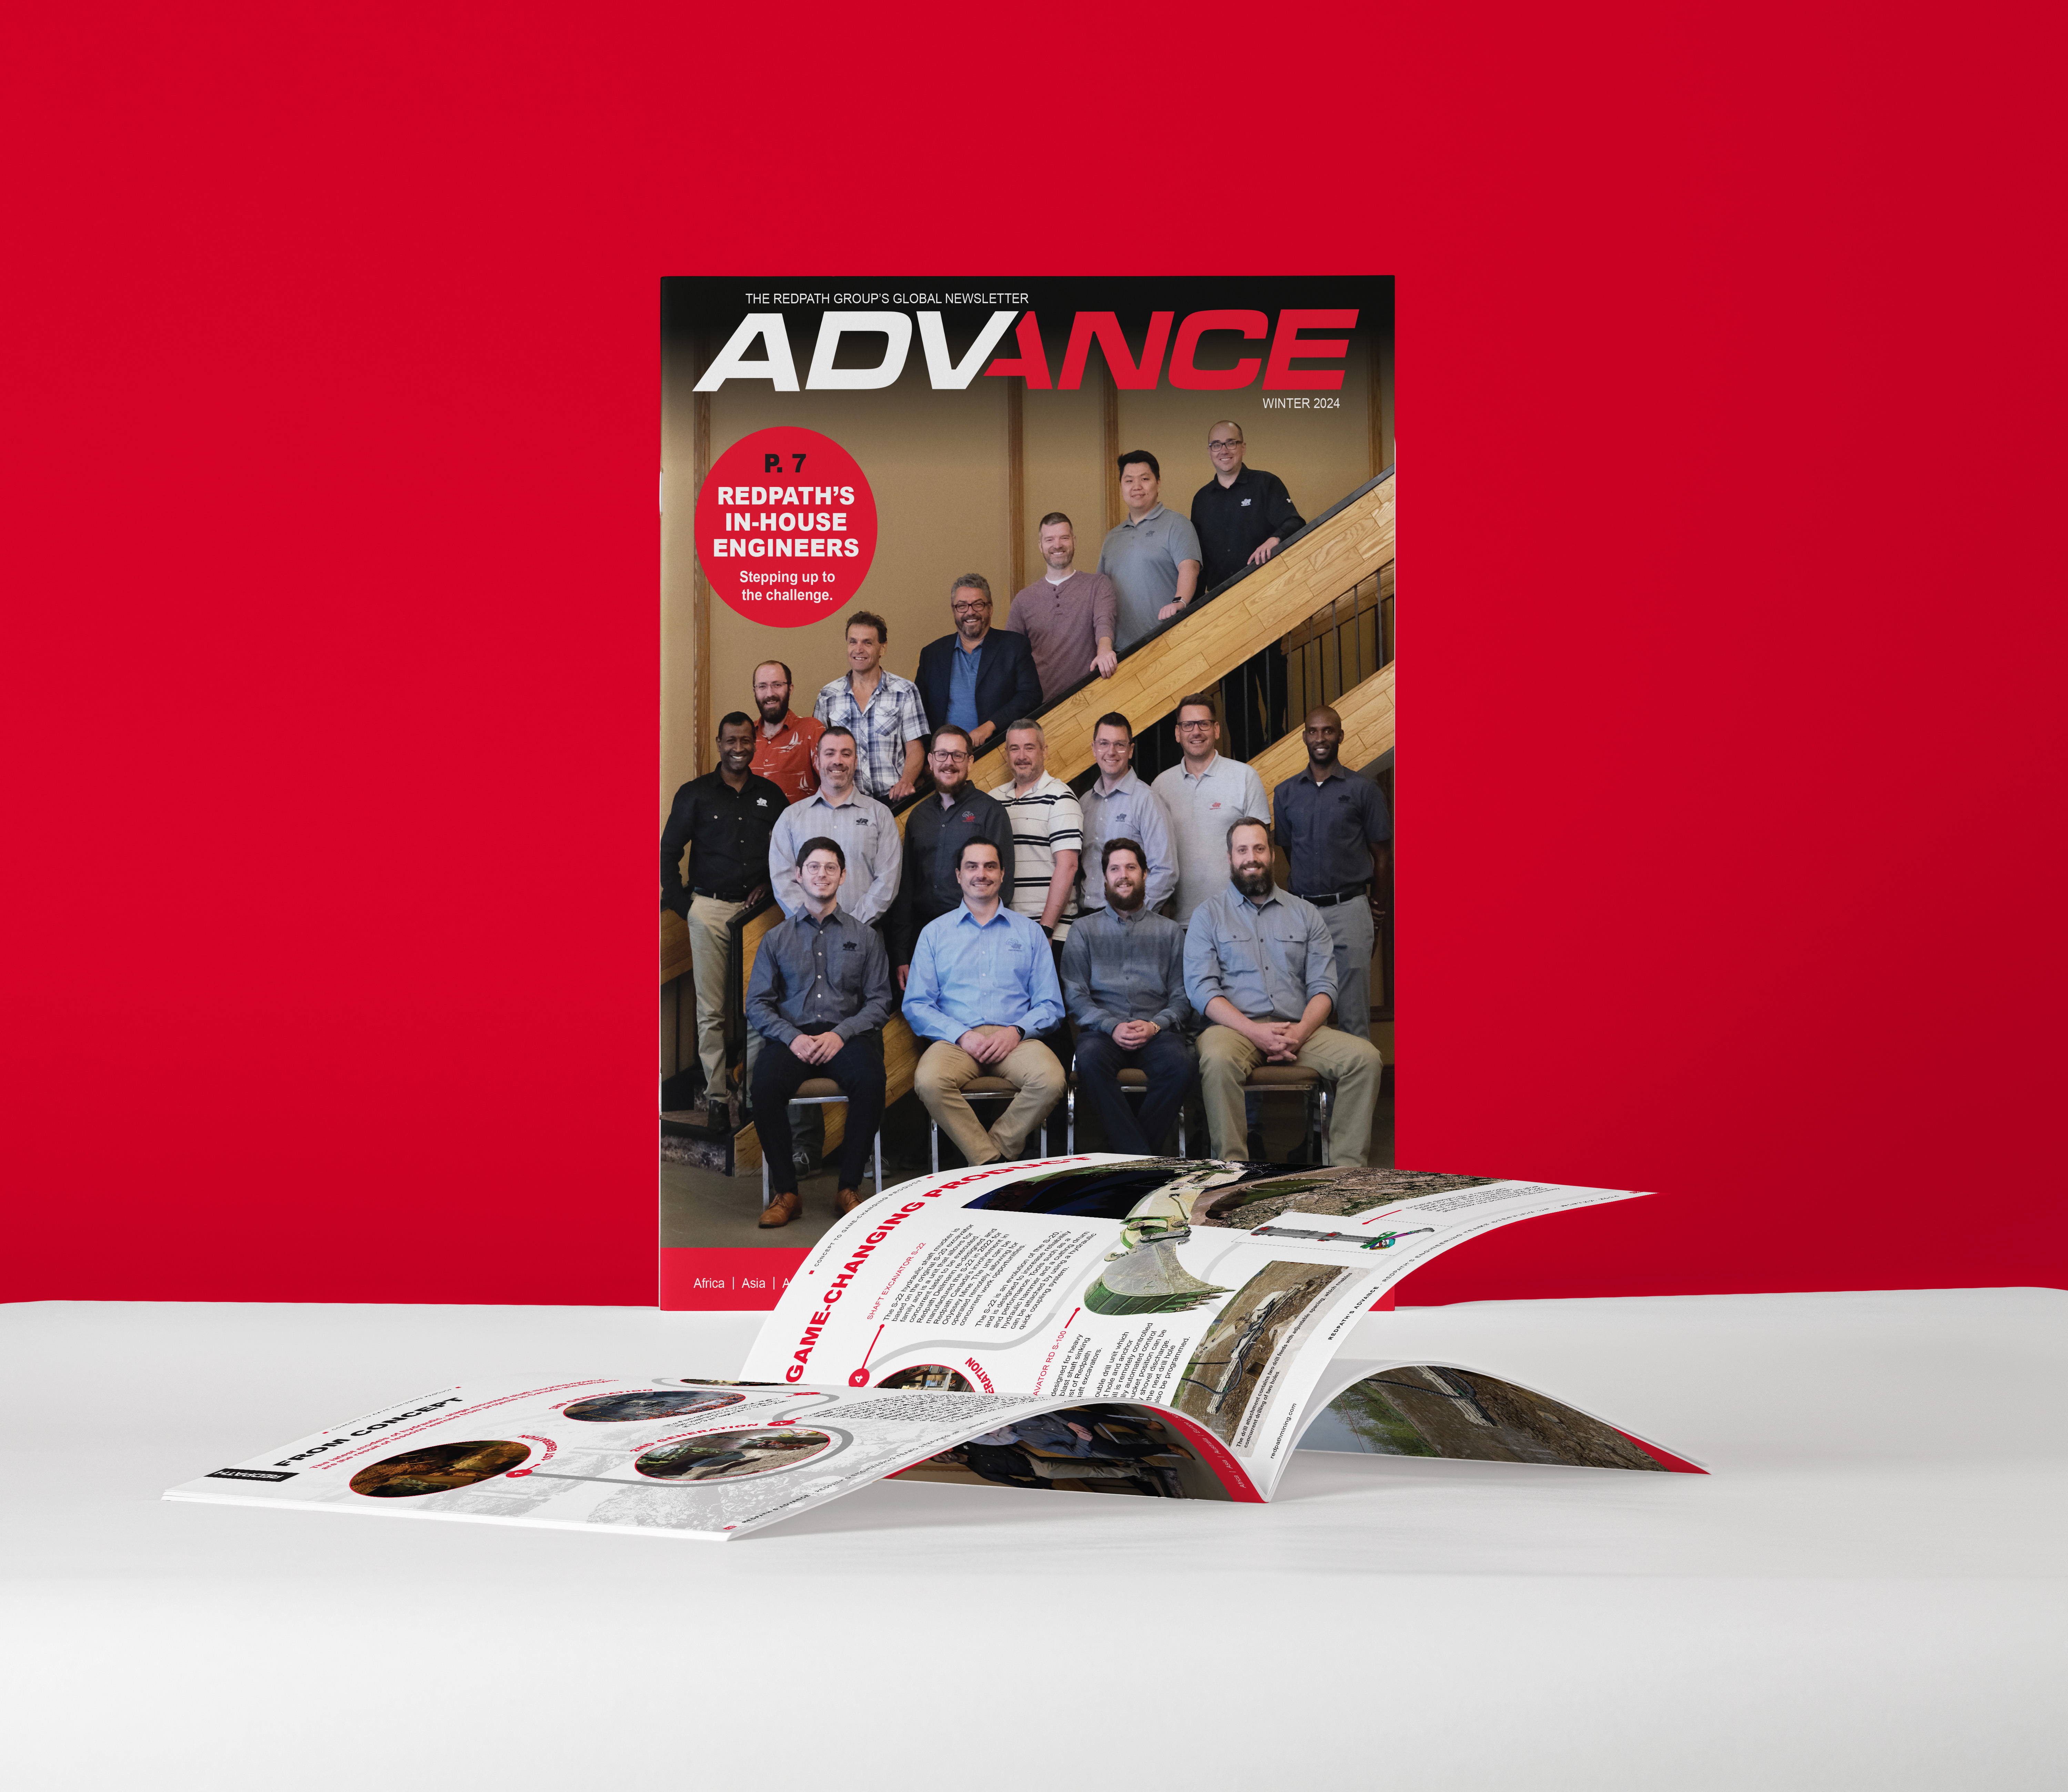 Portada de la publicación Advance que muestra a los ingenieros de Redpath alineados en una escalera.